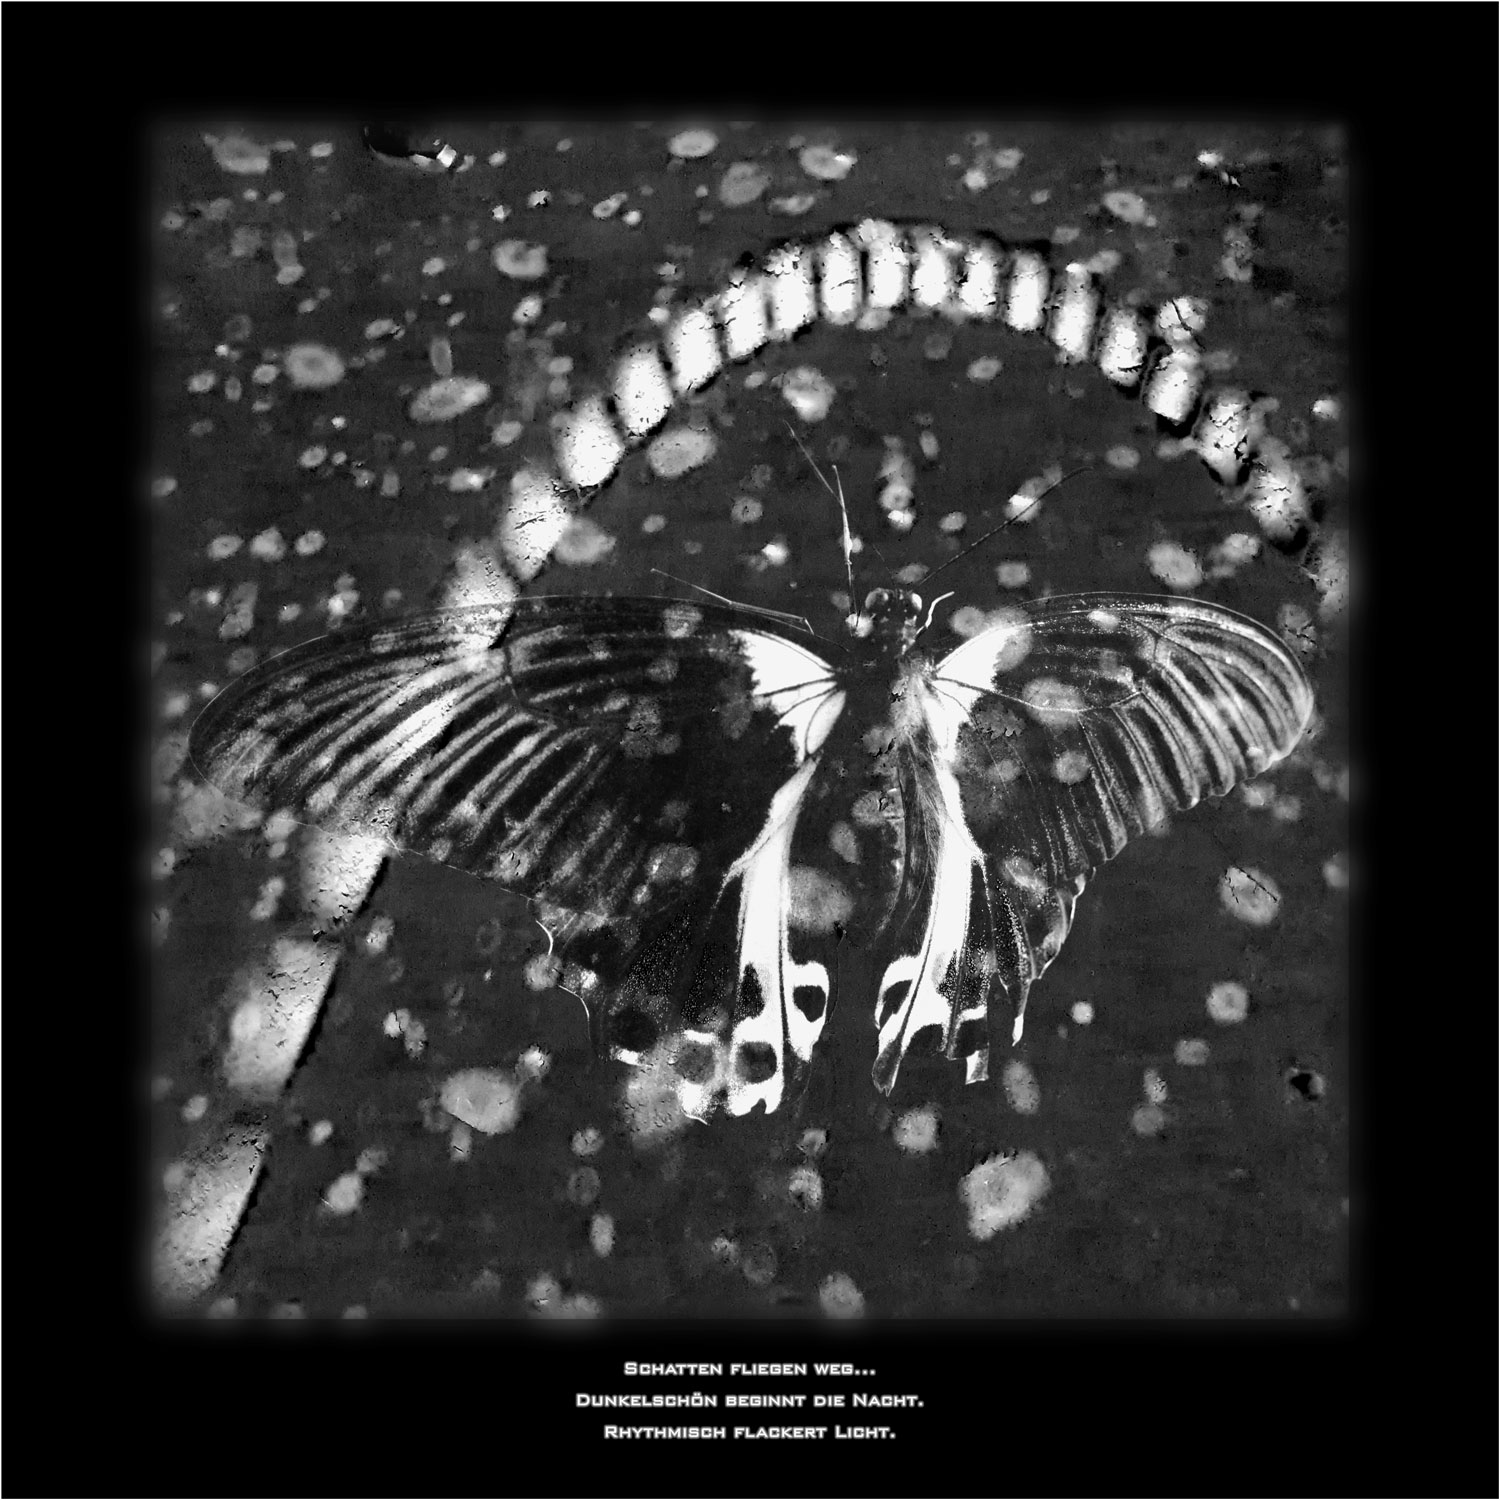 Schwarz-Weiß-Fotografie von einem Schmetterling vor einem Hintergrund mit Lichtreflexen. Das Motiv ist mit einem Kurzgedicht beschriftet.